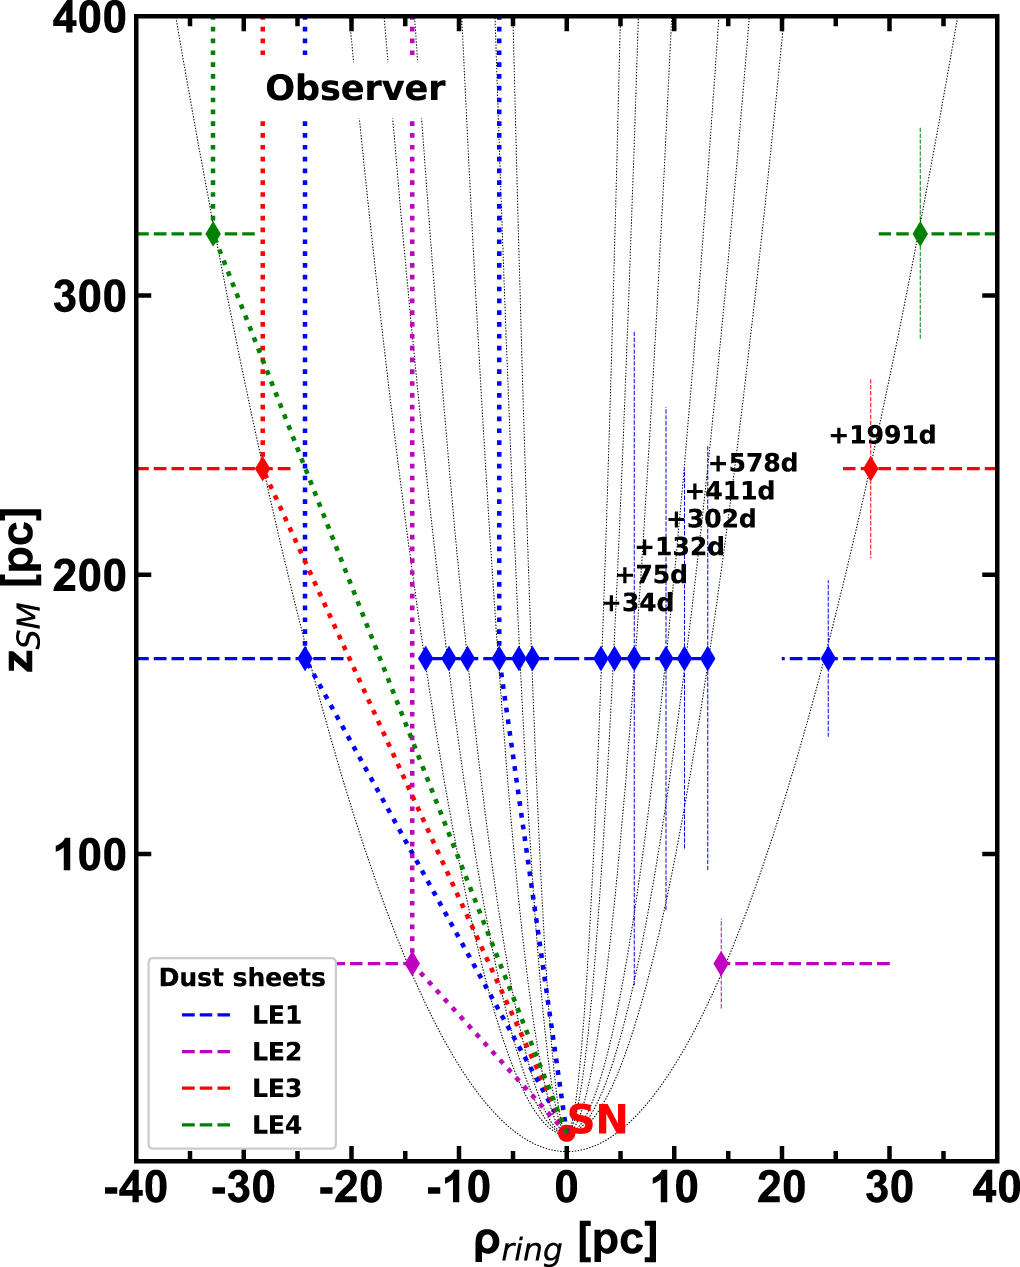 Schemat graficzny wielu warstw nieprzeźroczystego pyłu znajdujących się wokół supernowej SN 2016ajd w kierunku, z którego widzimy na Ziemi wielokrotne echa świetlne LE1, LE2, LE3 i LE4. Na rysunku parabole wskazują na powierzchnie o równym czasie podróży światła do obserwatora. Poziome, przerywane linie oznaczają oszacowaną odległość zSM w parsekach od supernowej do warstwy pyłu generującego dane echo świetlne zgodnie z podstawowym wzorem teorii echa świetlnego (1) z omawianej publikacji, a pionowe linie przerywane – grubość warstwy pyłu generującego dane echo świetlne. Warto zauważyć, że warstwy pyłu niekoniecznie rozciągają się symetrycznie po obu stronach względem kierunku obserwacji. Tutaj ρring oznacza pozorny promień echa świetlnego w parsekach rzutowany na sferę niebieską. Źródło: The Astrophysical Journal Letters (2022) 939 L8. https://doi.org/10.3847/2041-8213/ac93f8)